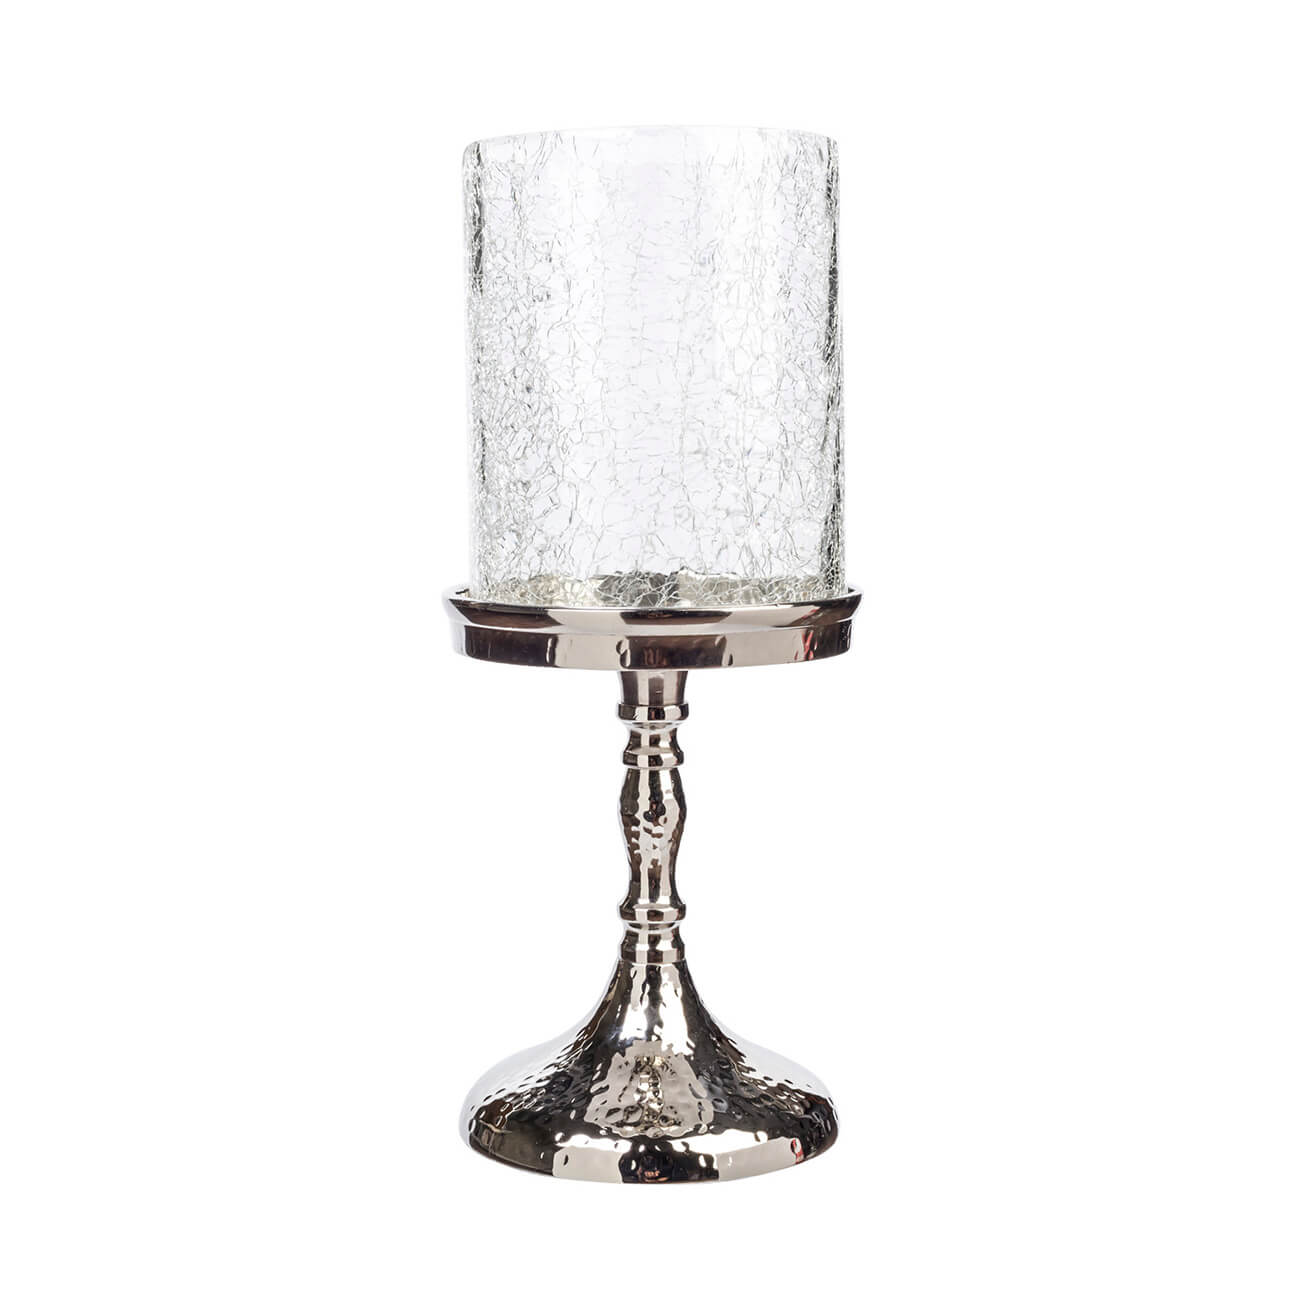 Kuchenland Подсвечник, 26 см, для одной свечи, на ножке, стекло/металл, серебристый, Кракелюр, Fantastic Ice